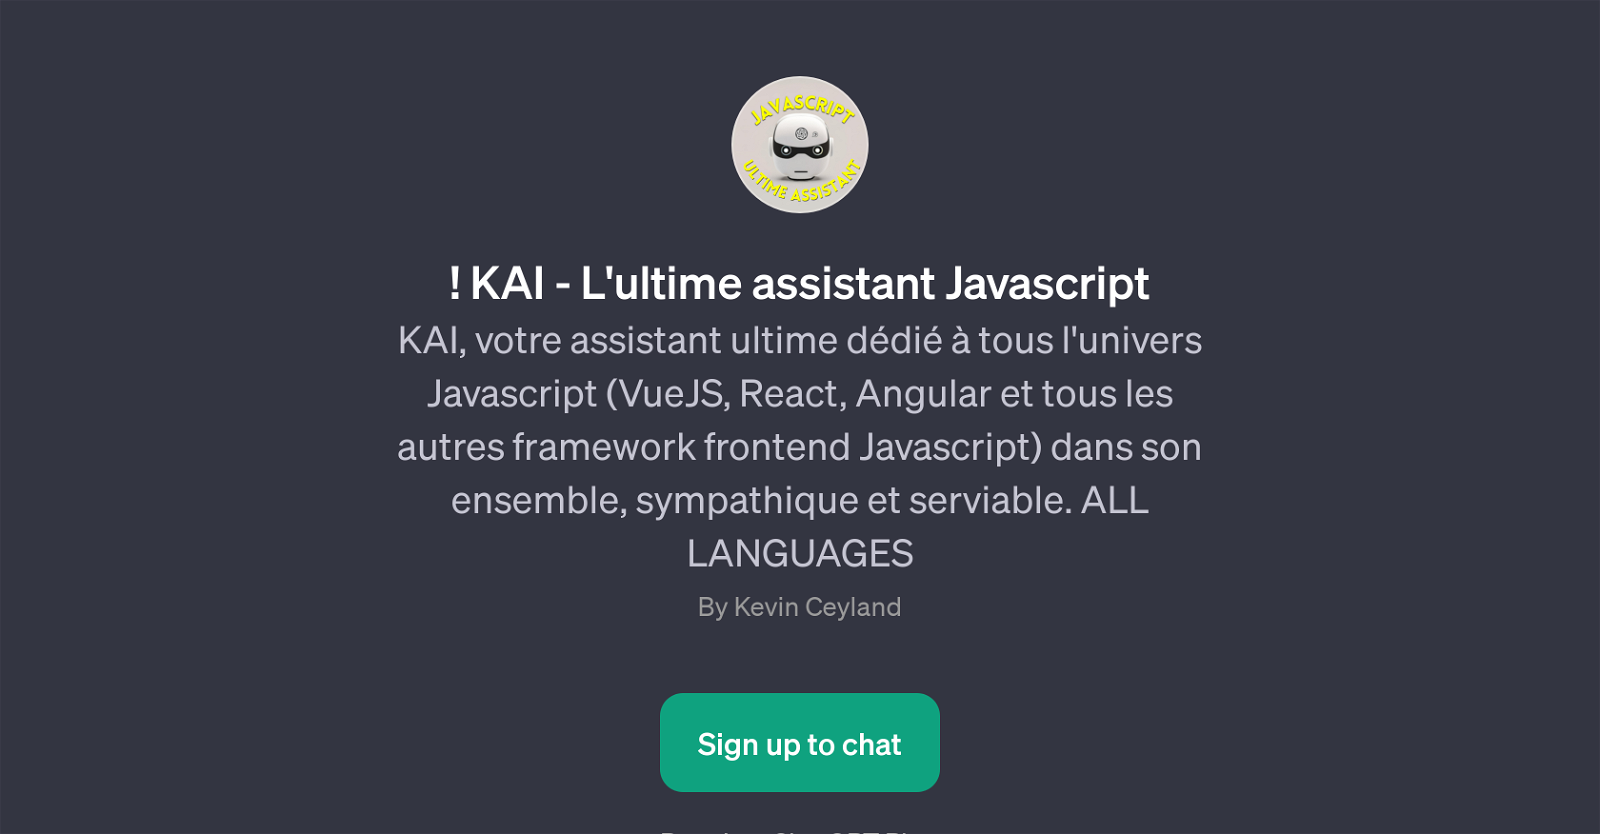 KAI - L'ultime assistant Javascript website